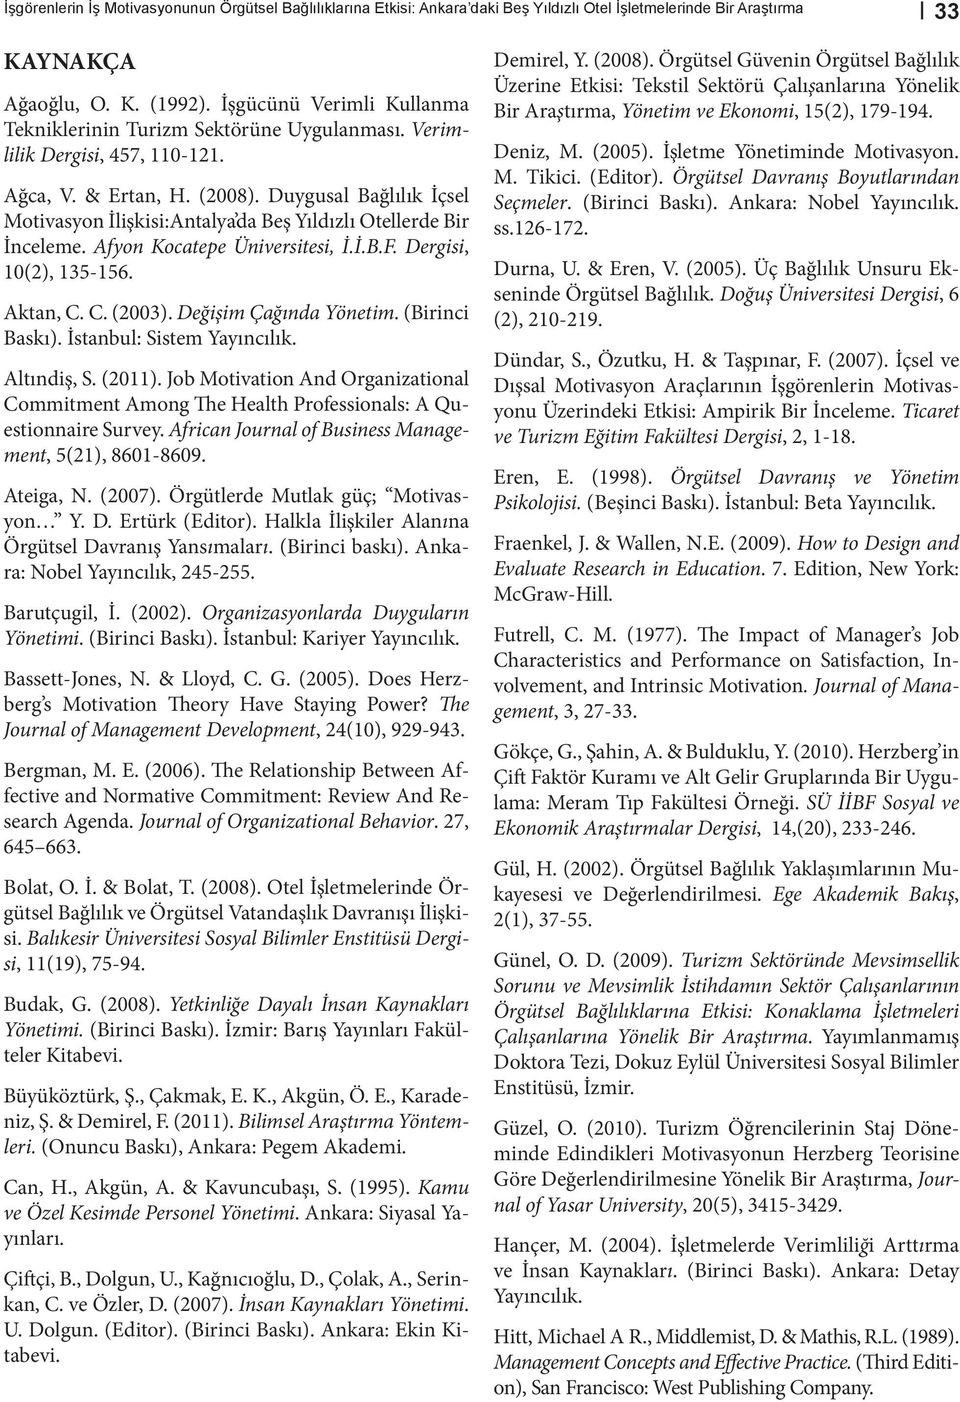 Duygusal Bağlılık İçsel Motivasyon İlişkisi:Antalya da Beş Yıldızlı Otellerde Bir İnceleme. Afyon Kocatepe Üniversitesi, İ.İ.B.F. Dergisi, 10(2), 135-156. Aktan, C. C. (2003). Değişim Çağında Yönetim.